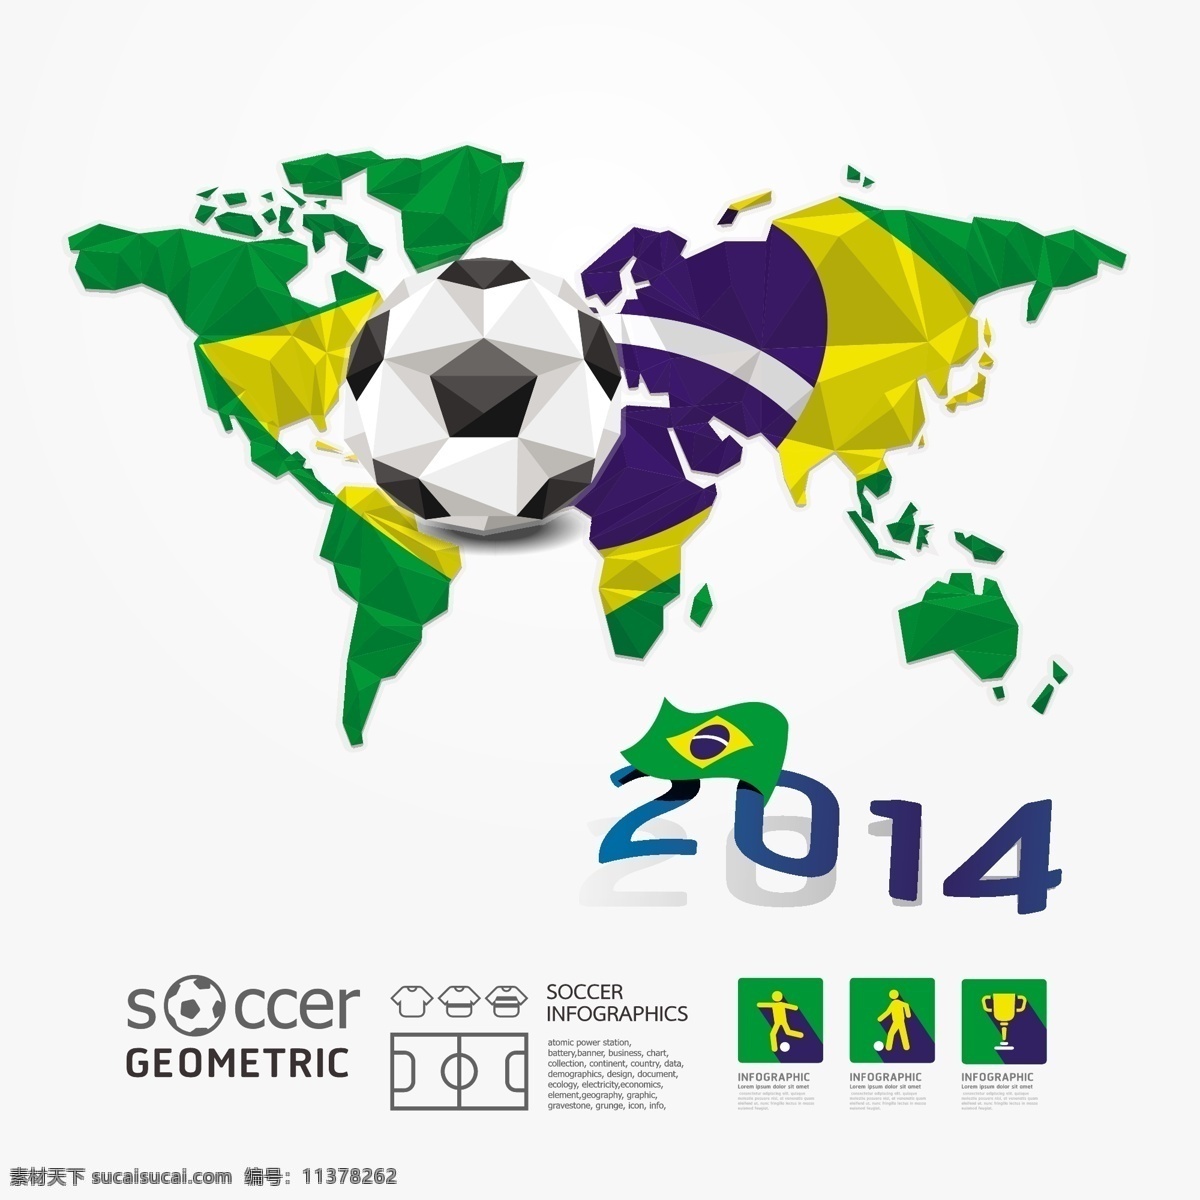 世界杯 标志 几何图形 地图 模板下载 巴西 足球 2014 背景 体育运动 生活百科 矢量素材 白色